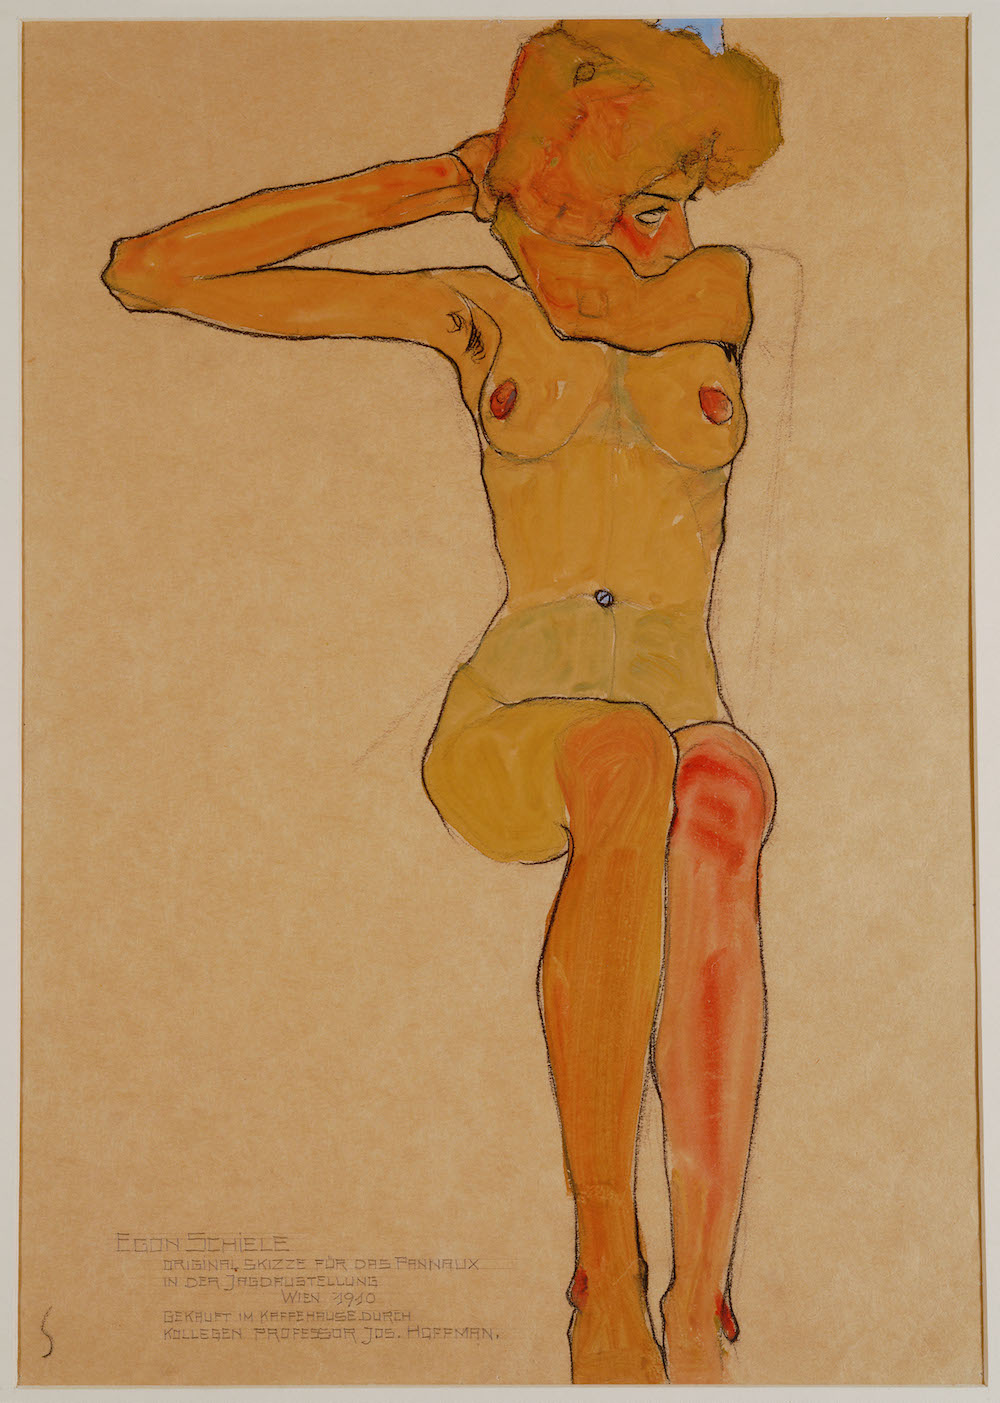 À quoi pensaient les femmes dans les portraits torrides d’Egon Schiele ?